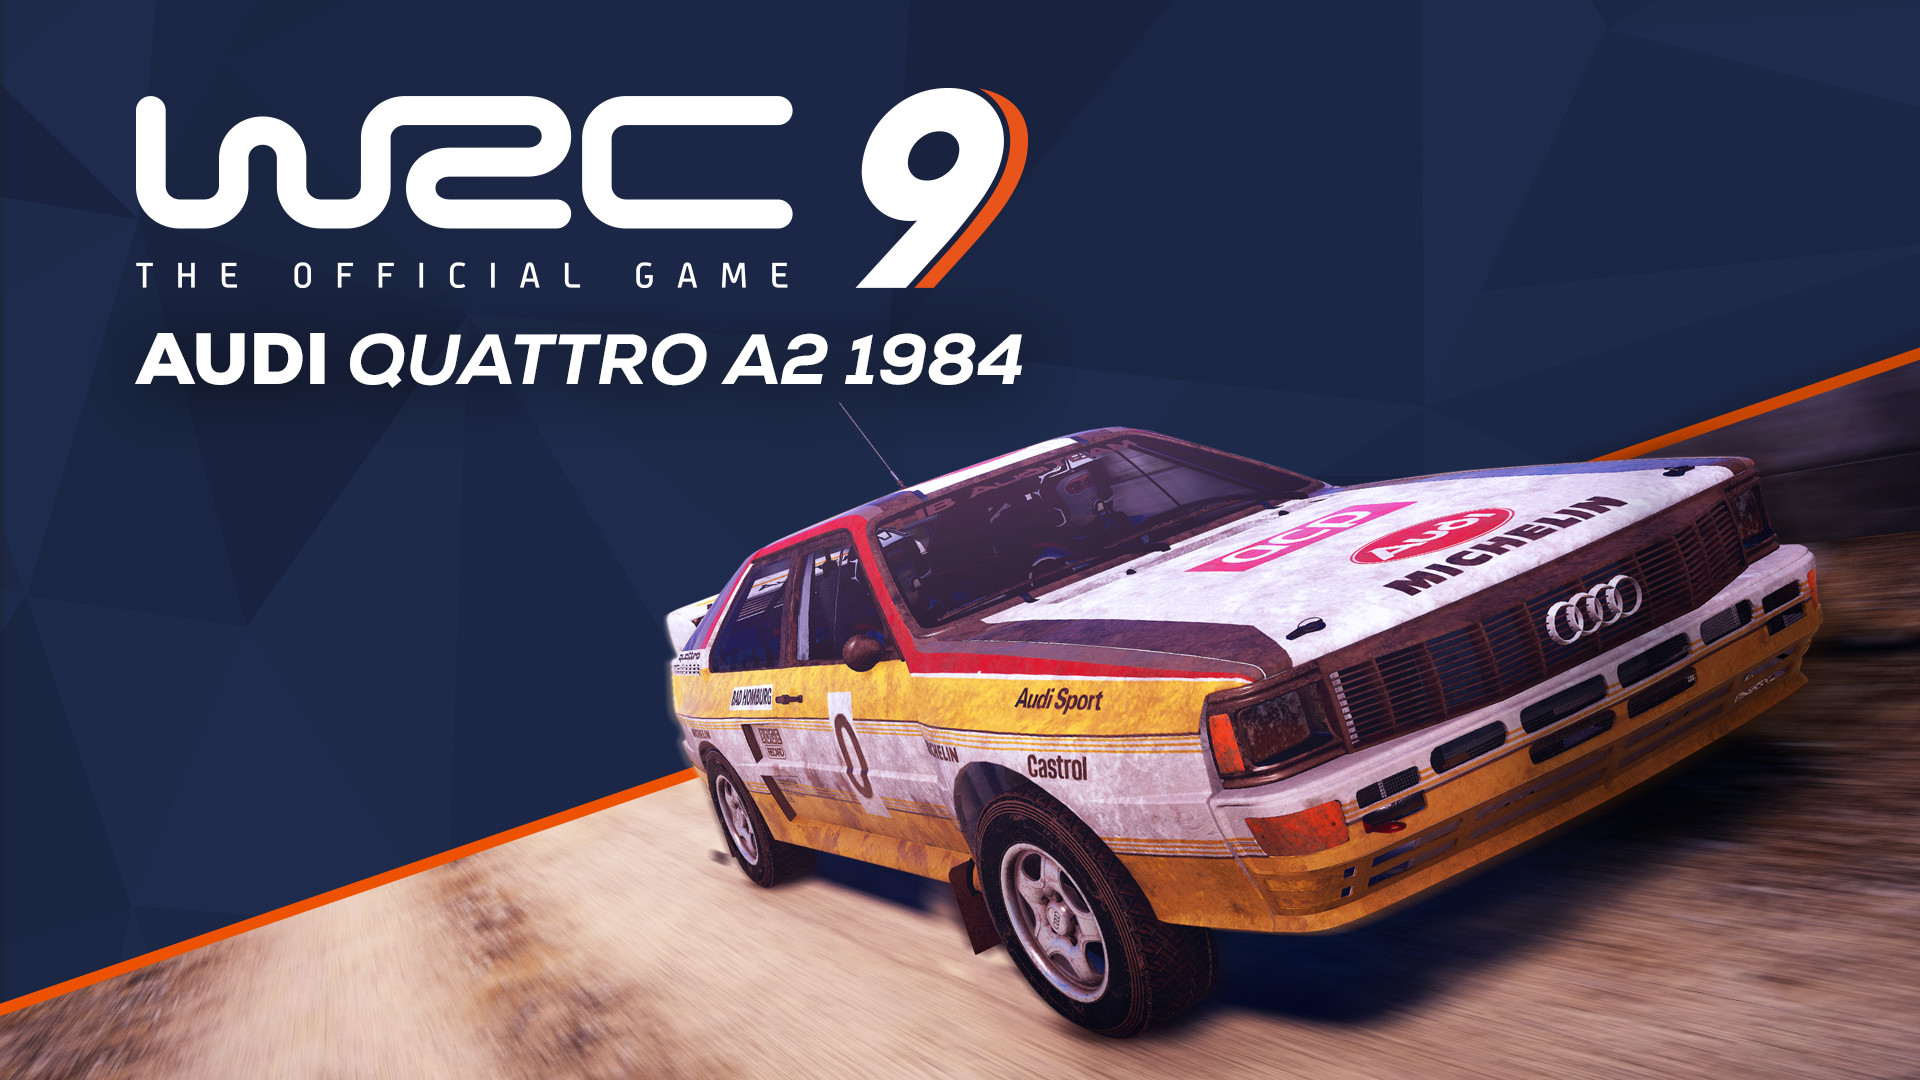 WRC 9 - Audi Quattro A2 1984 DLC Steam CD Key 1.83 $